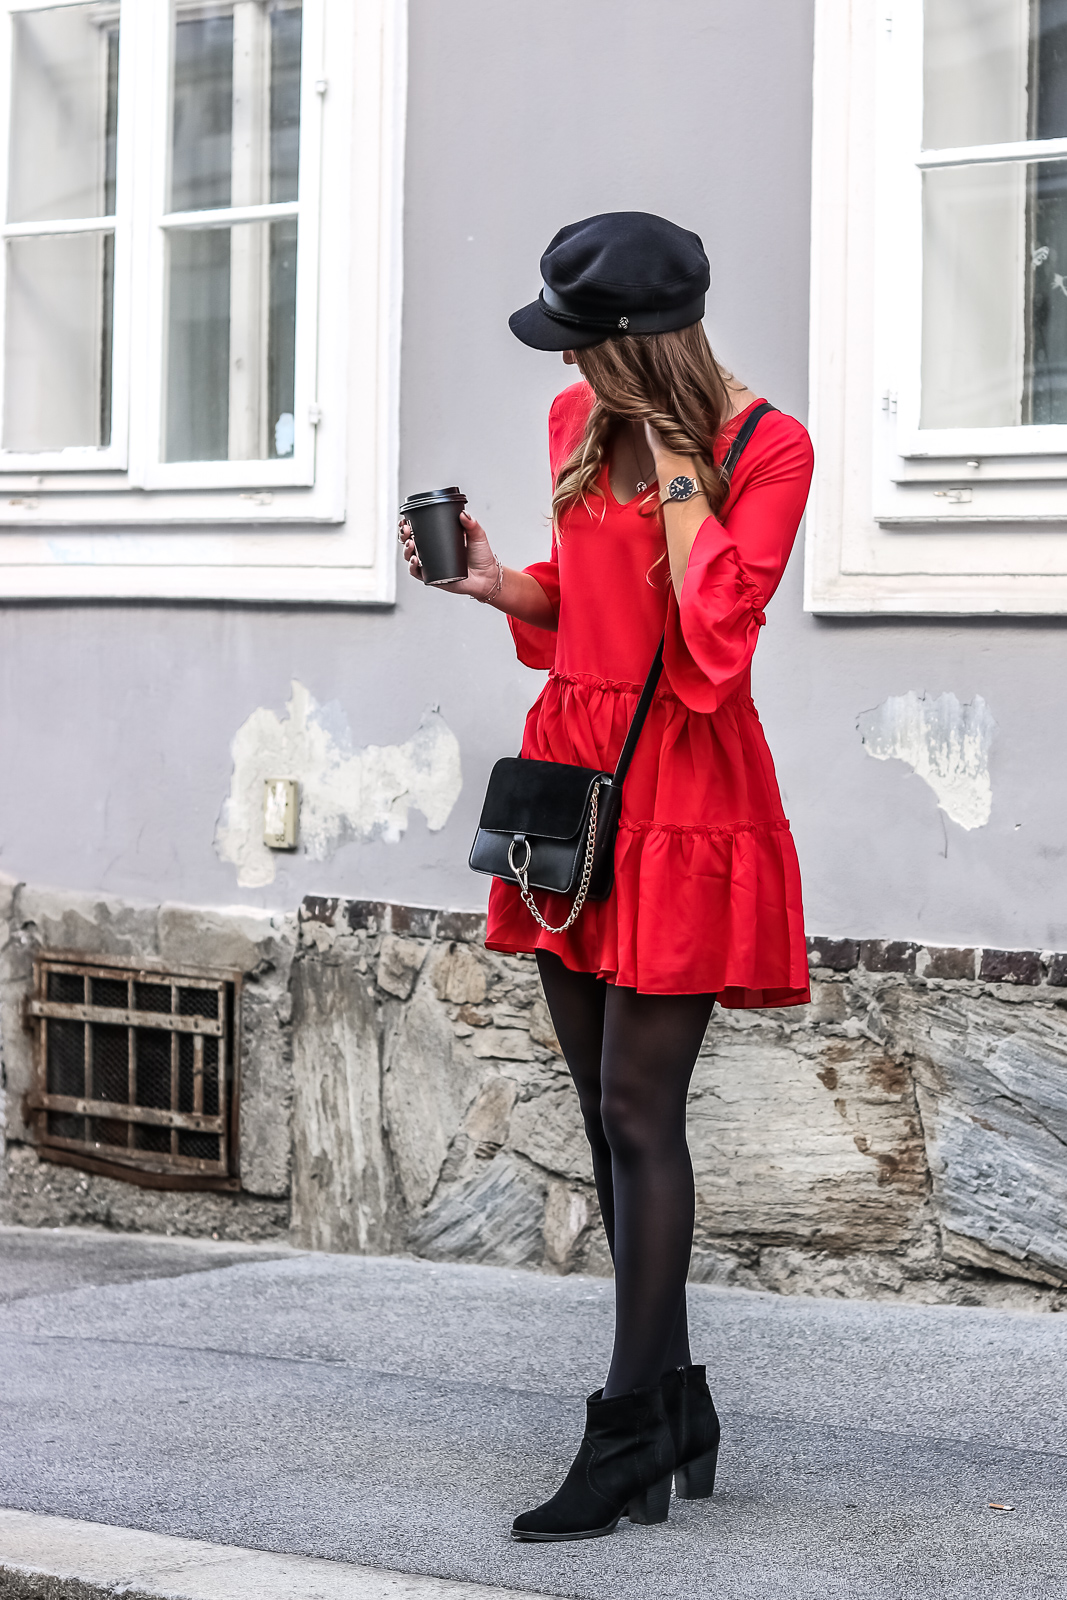 Rotes Kleid kombinieren - so gelingt dir ein stylischer Look - so kombinierst du dein rotes Kleid am besten - Rotes Kleid mit Schwarz kombinieren - Outfit Kombi mit rotem Kleid - Das Rote Kleid kombinieren - Fashionladyloves by Tamara Wagner Fashion Blog